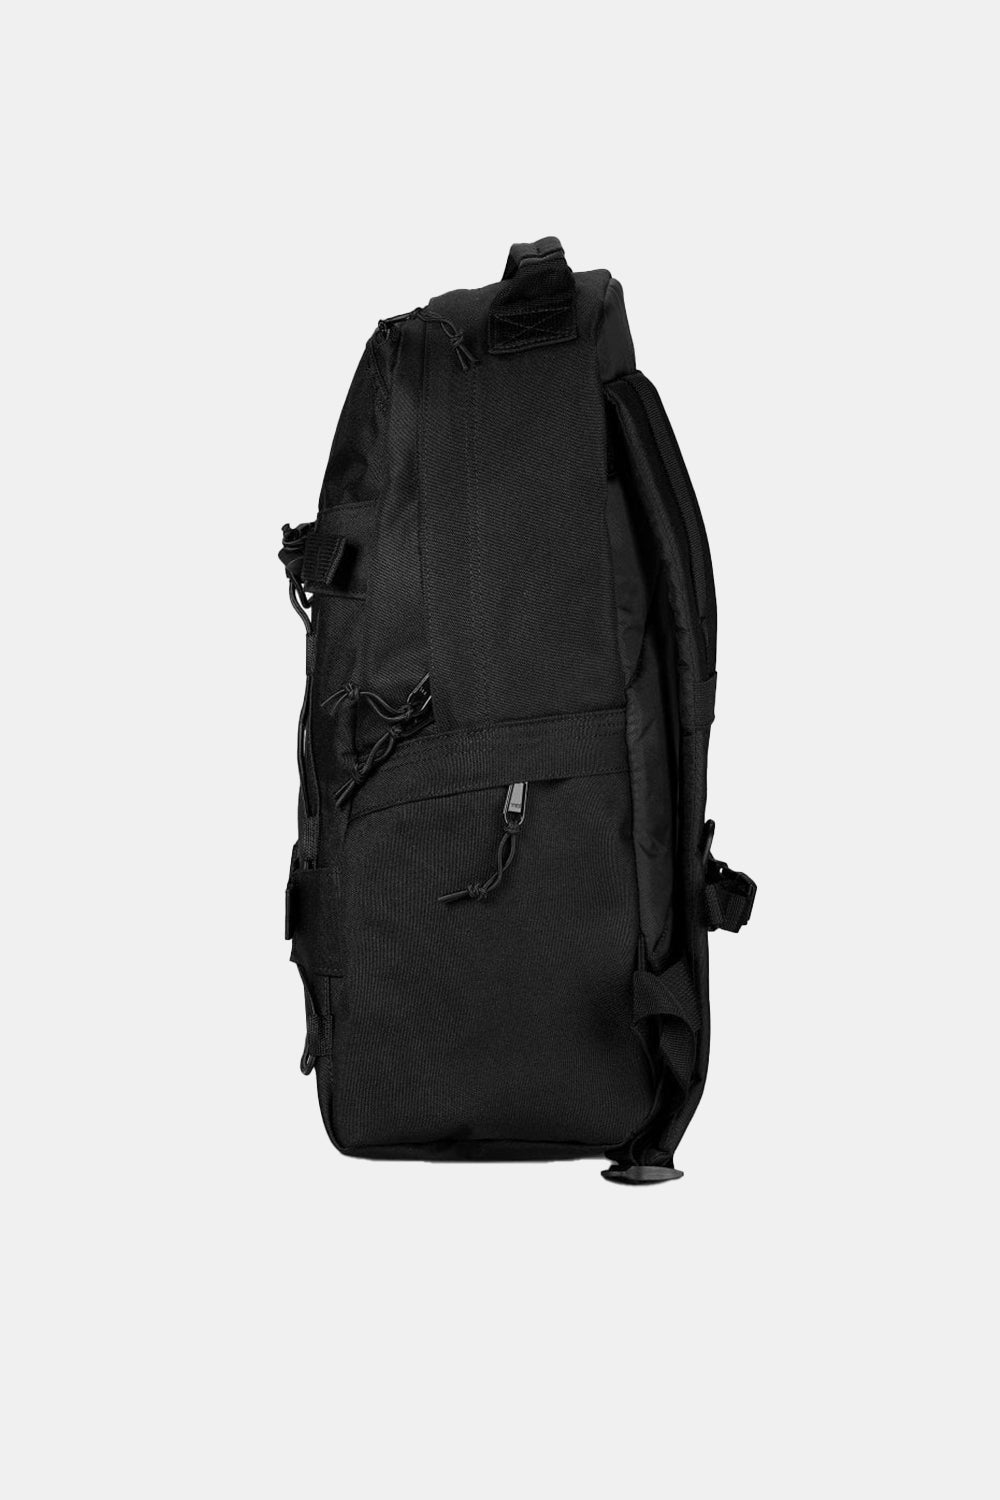 Carhartt WIP Recycled Kickflip Backpack (Black)